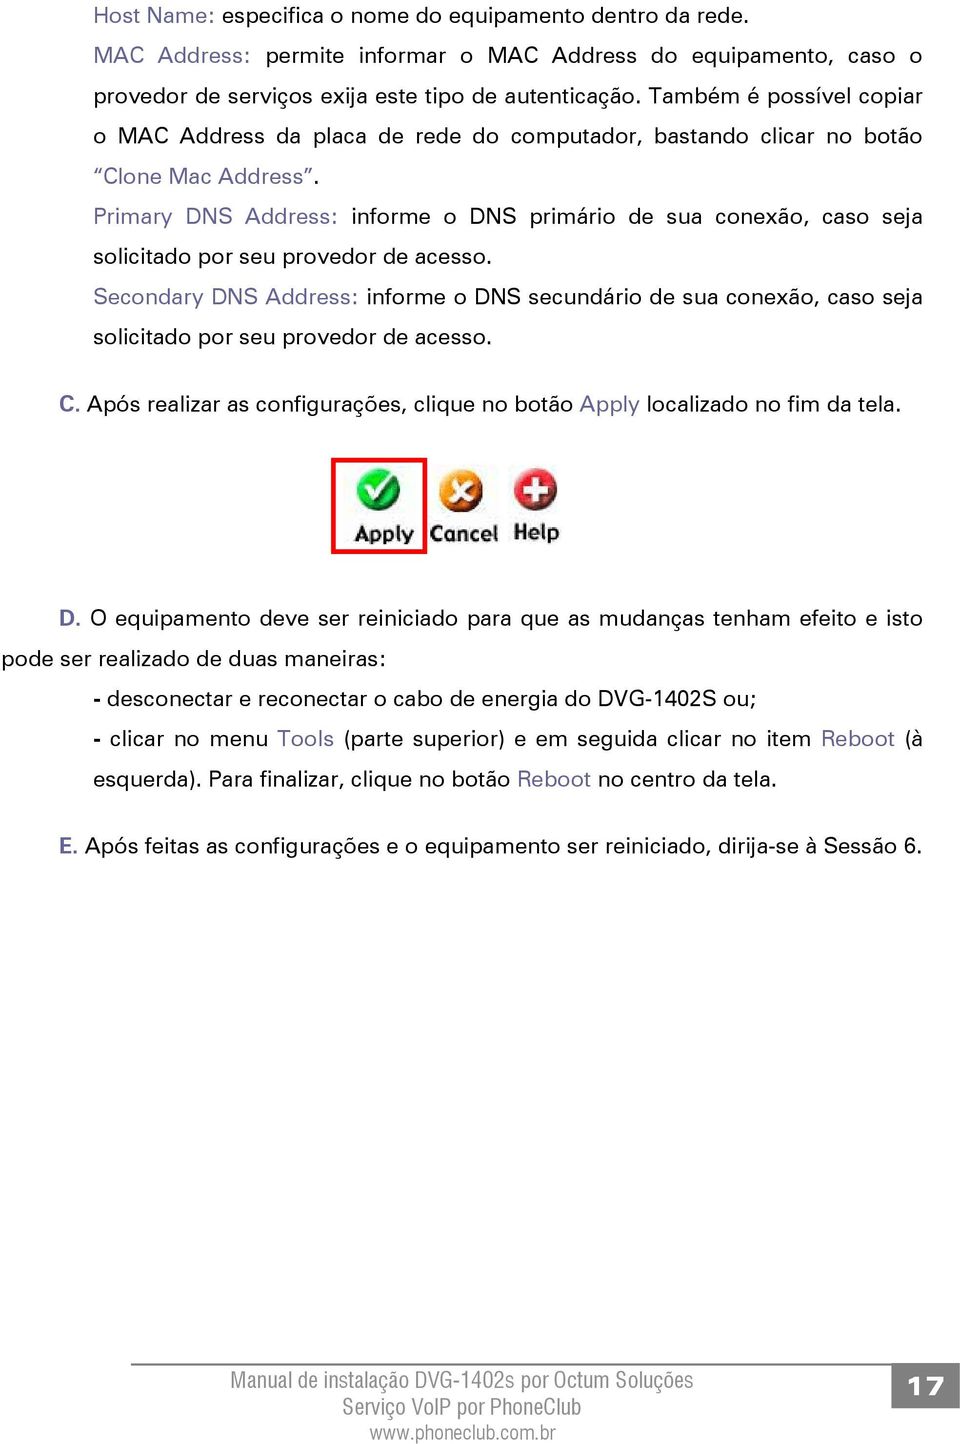 Primary DNS Address: informe o DNS primário de sua conexão, caso seja solicitado por seu provedor de acesso.